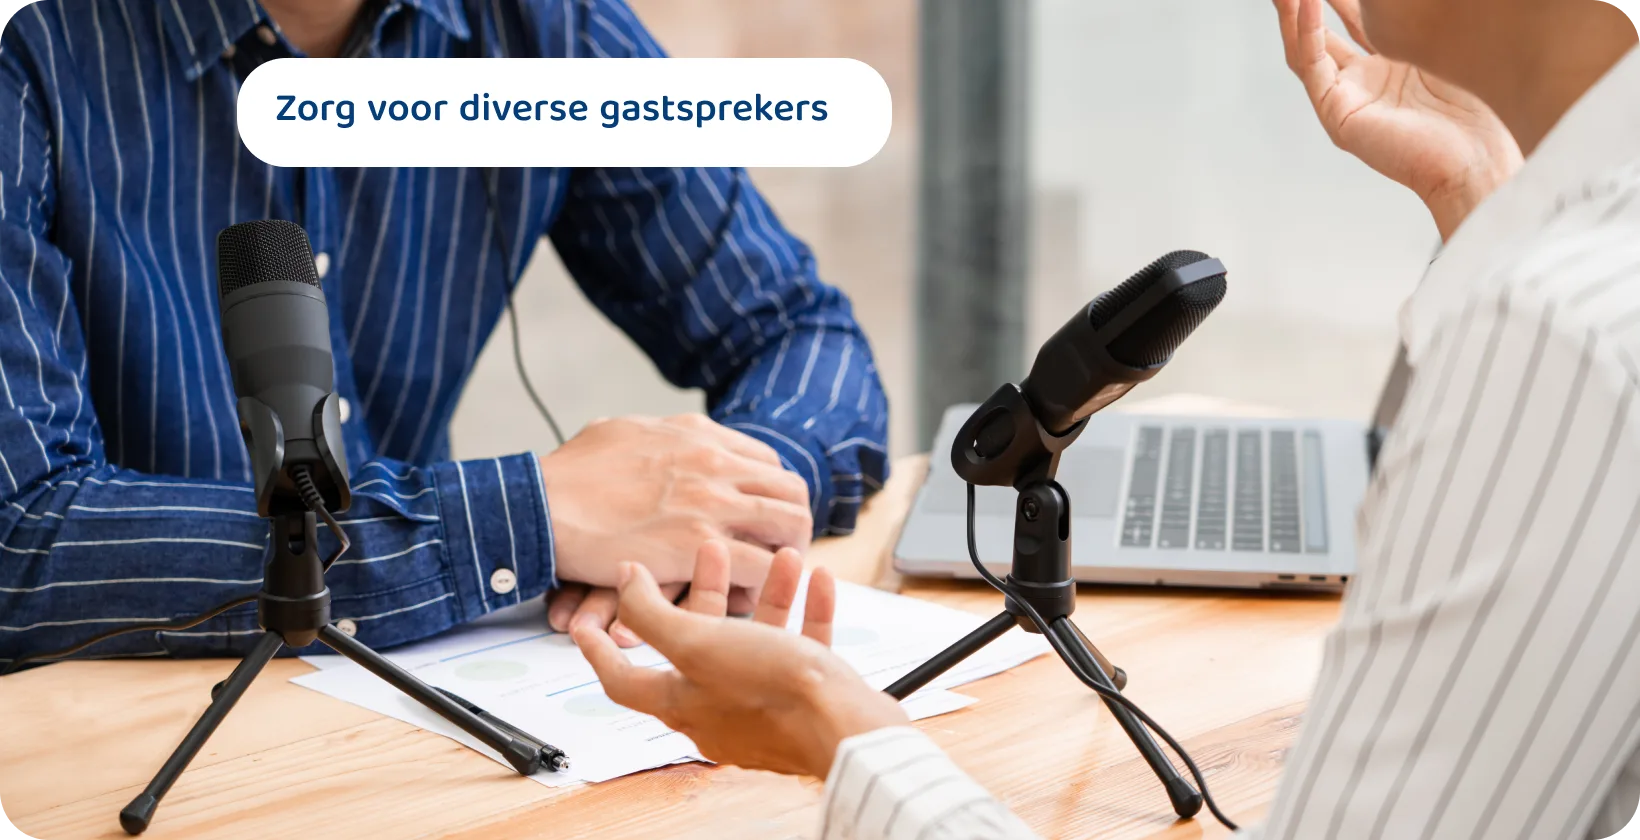 Twee podcasters met microfoons die discussiëren, kunnen de inhoudelijke tips zijn voor boeiende en diverse gastsprekersessies.